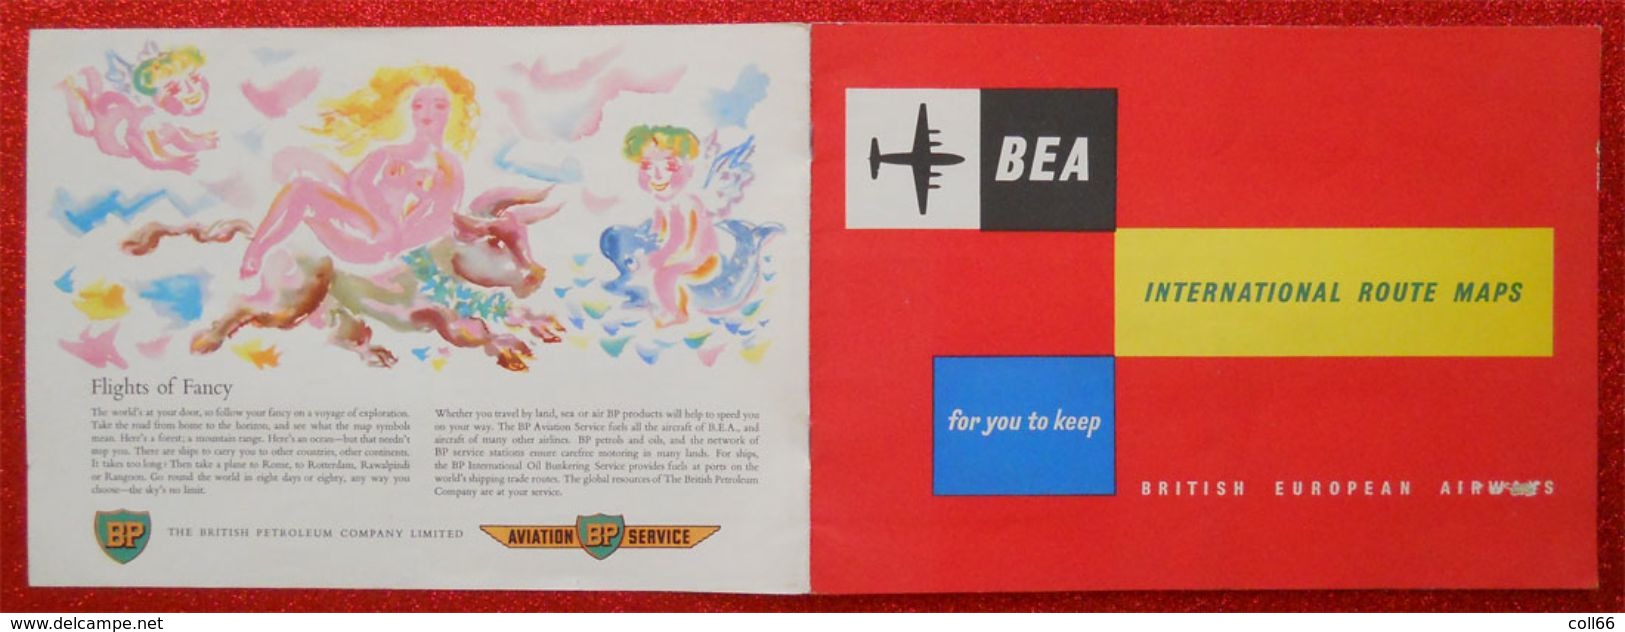 Publicité BEAA Advertising British European Airways Vintage International Route Maps Dunlop BP Brochure - Publicités